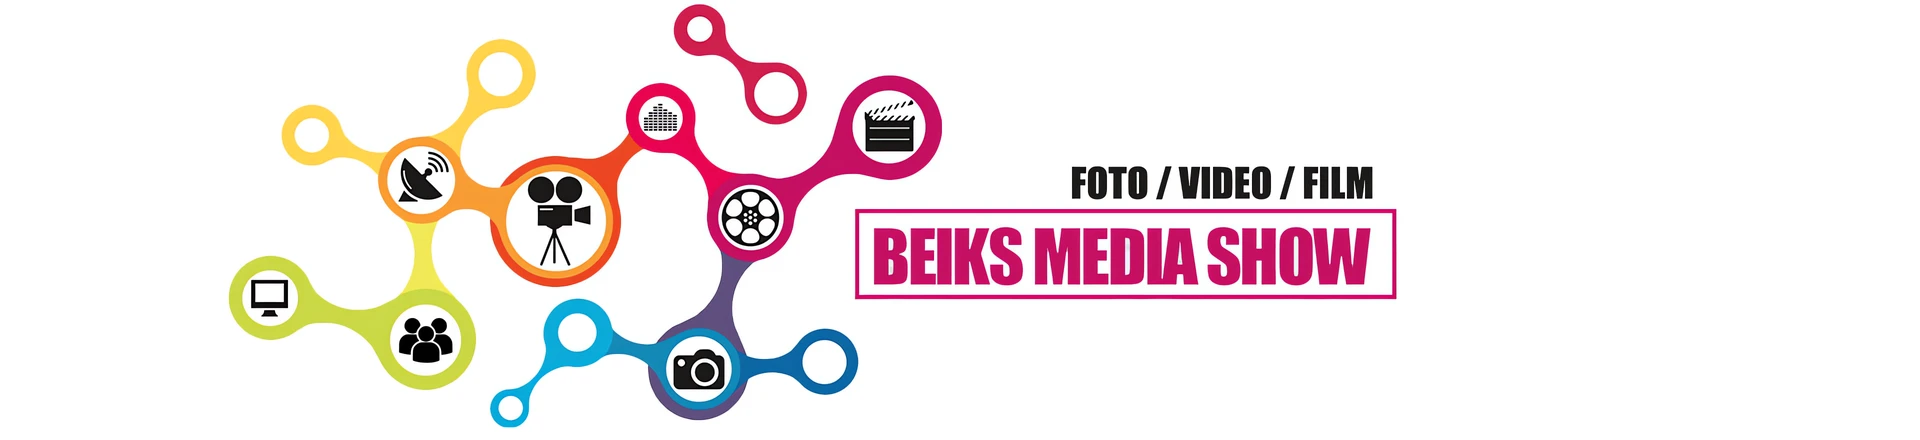 BEIKS MEDIA SHOW 2022 - święto dla branży foto / video / film